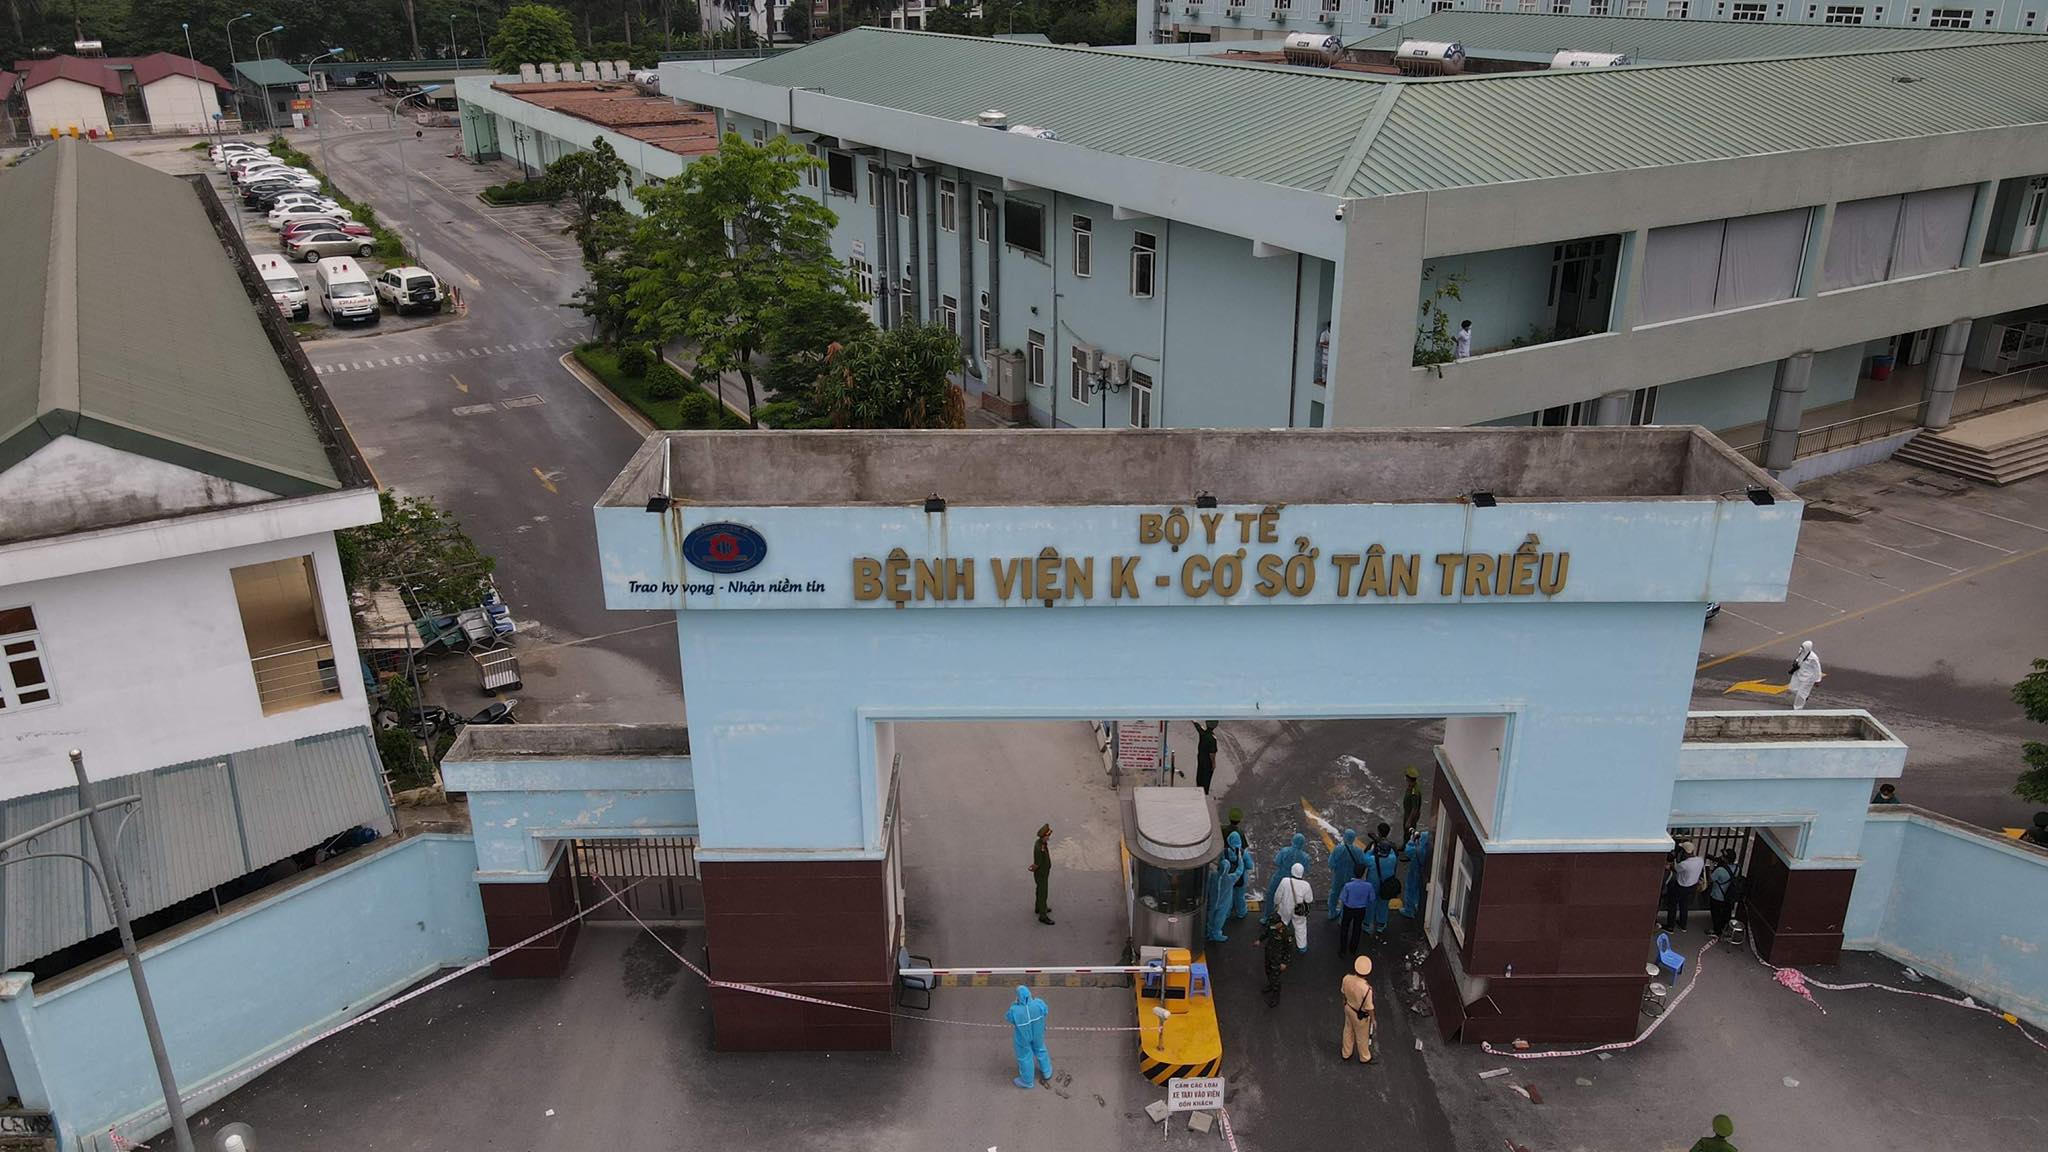 Bệnh viện K cơ sở Tân Triều (Thanh Trì, Hà Nội).